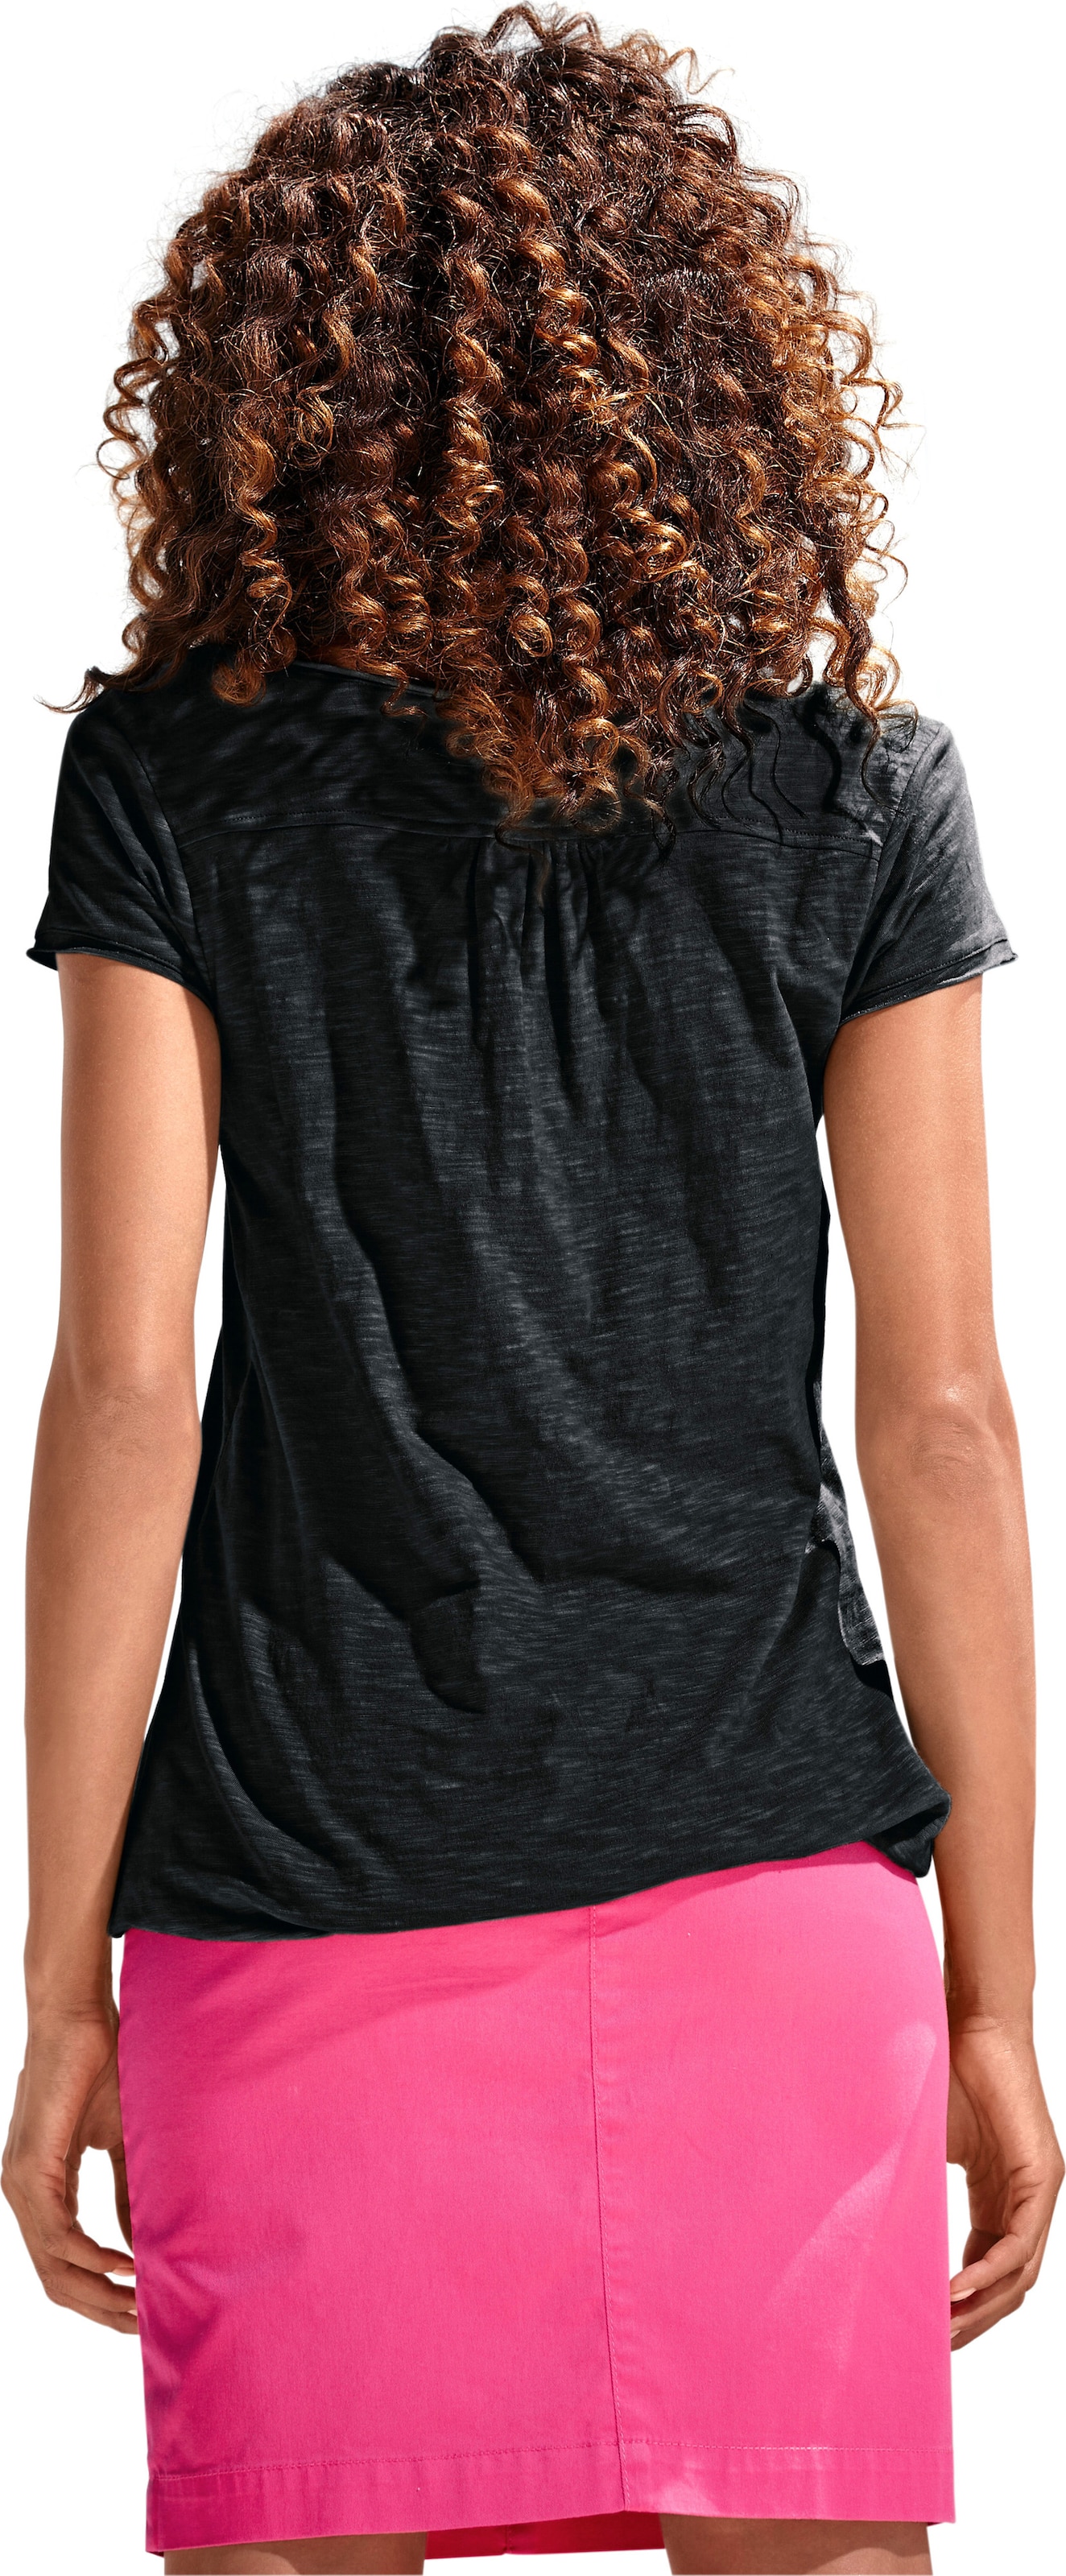 Spitzen Shirt  günstig Kaufen-Rundhals-Shirt in schwarz von heine. Rundhals-Shirt in schwarz von heine <![CDATA[Rundhals-Shirt Moderne Form mit Gummizugbund. Mit Spitzen-Details und schimmernden Knöpfen. Leichte Shirtware mit Flammé-Effekt.]]>. 